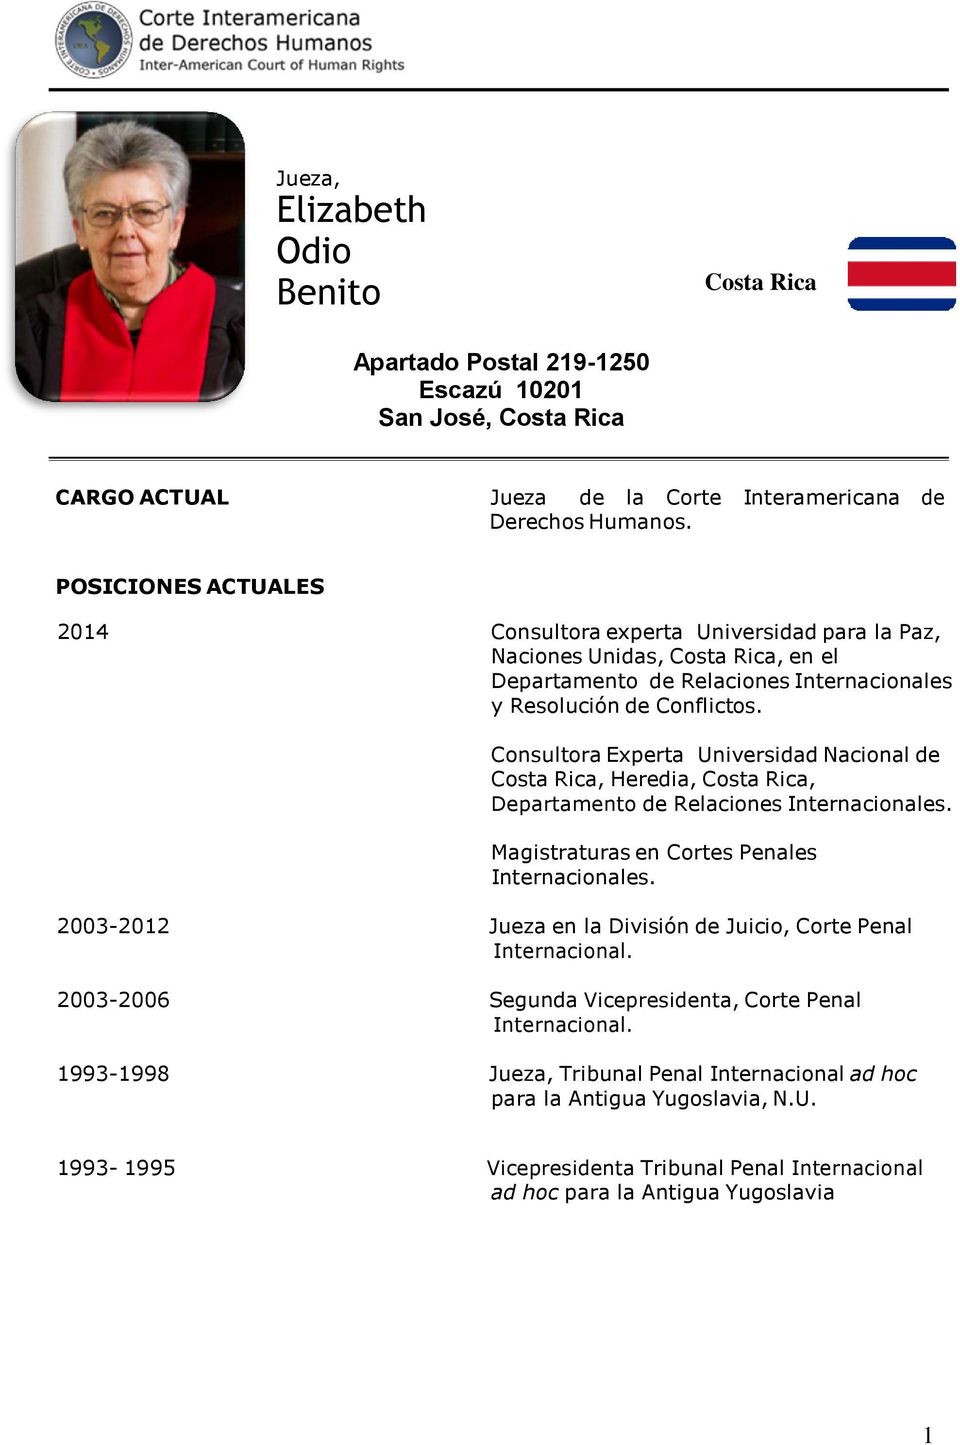 Consultora Experta Universidad Nacional de Costa Rica, Heredia, Costa Rica, Departamento de Relaciones Internacionales. Magistraturas en Cortes Penales Internacionales.